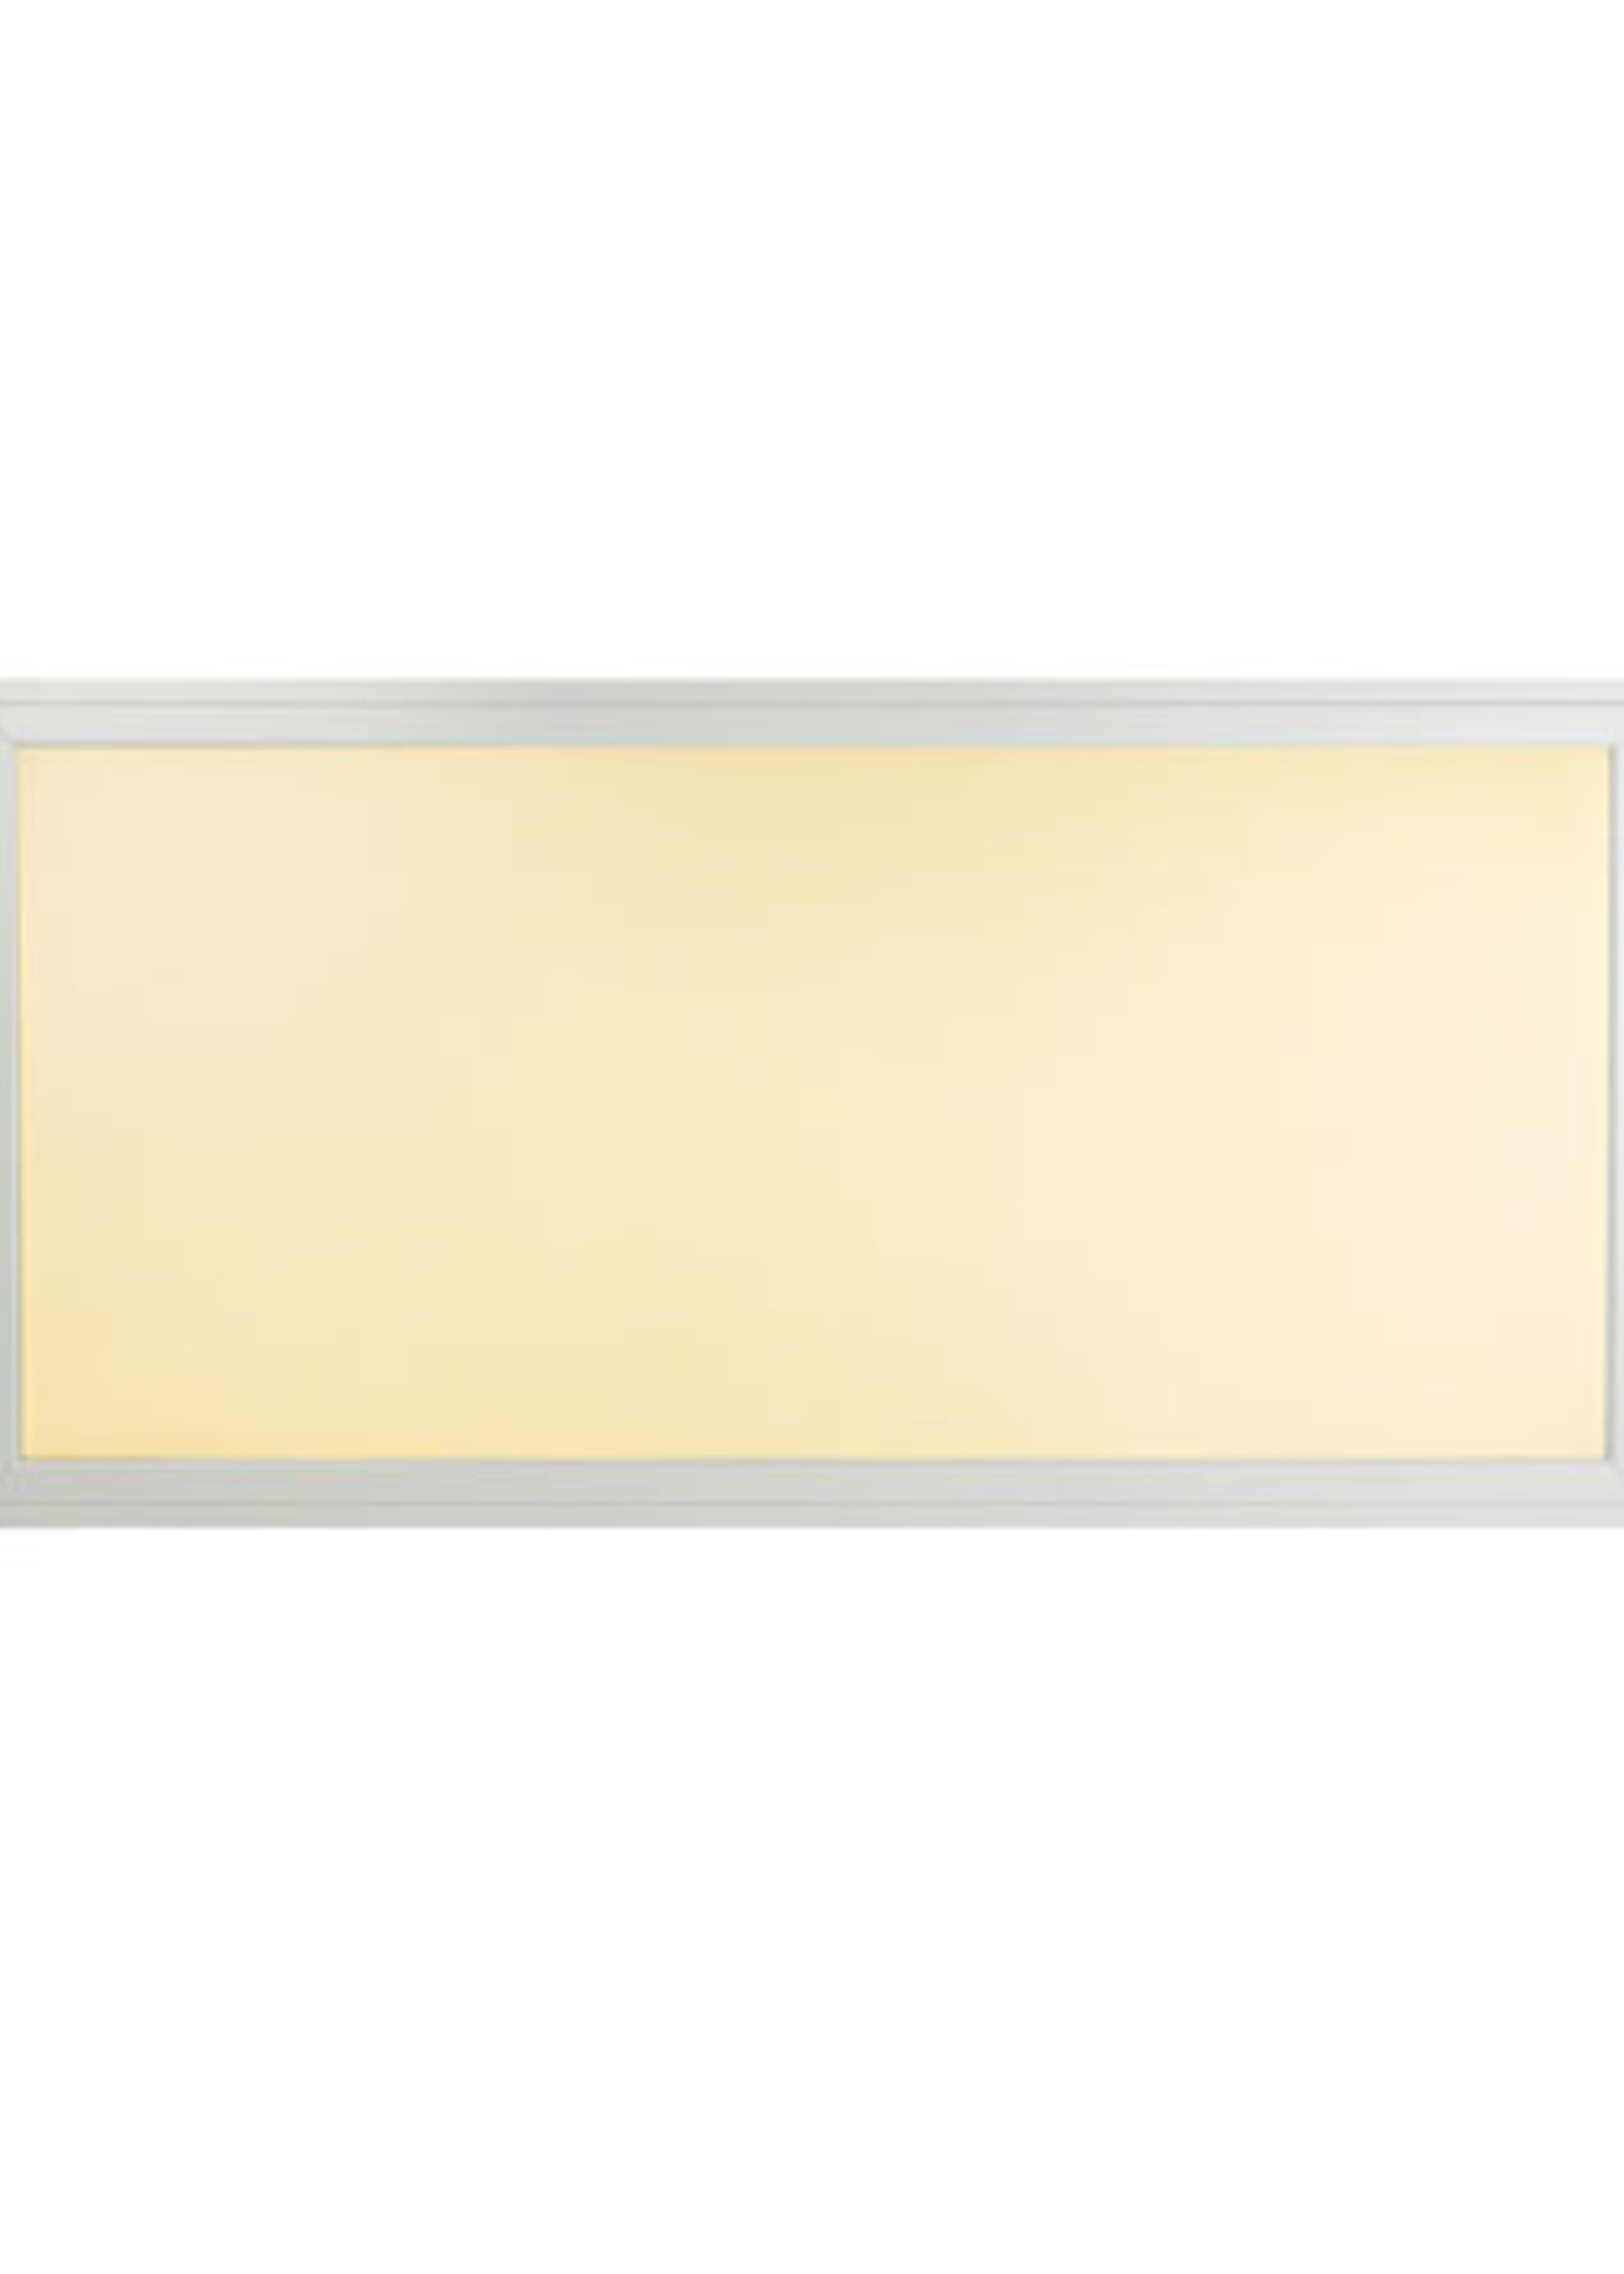 LED Paneel 60x120cm 60W 120lm/W High lumen Edge-lit